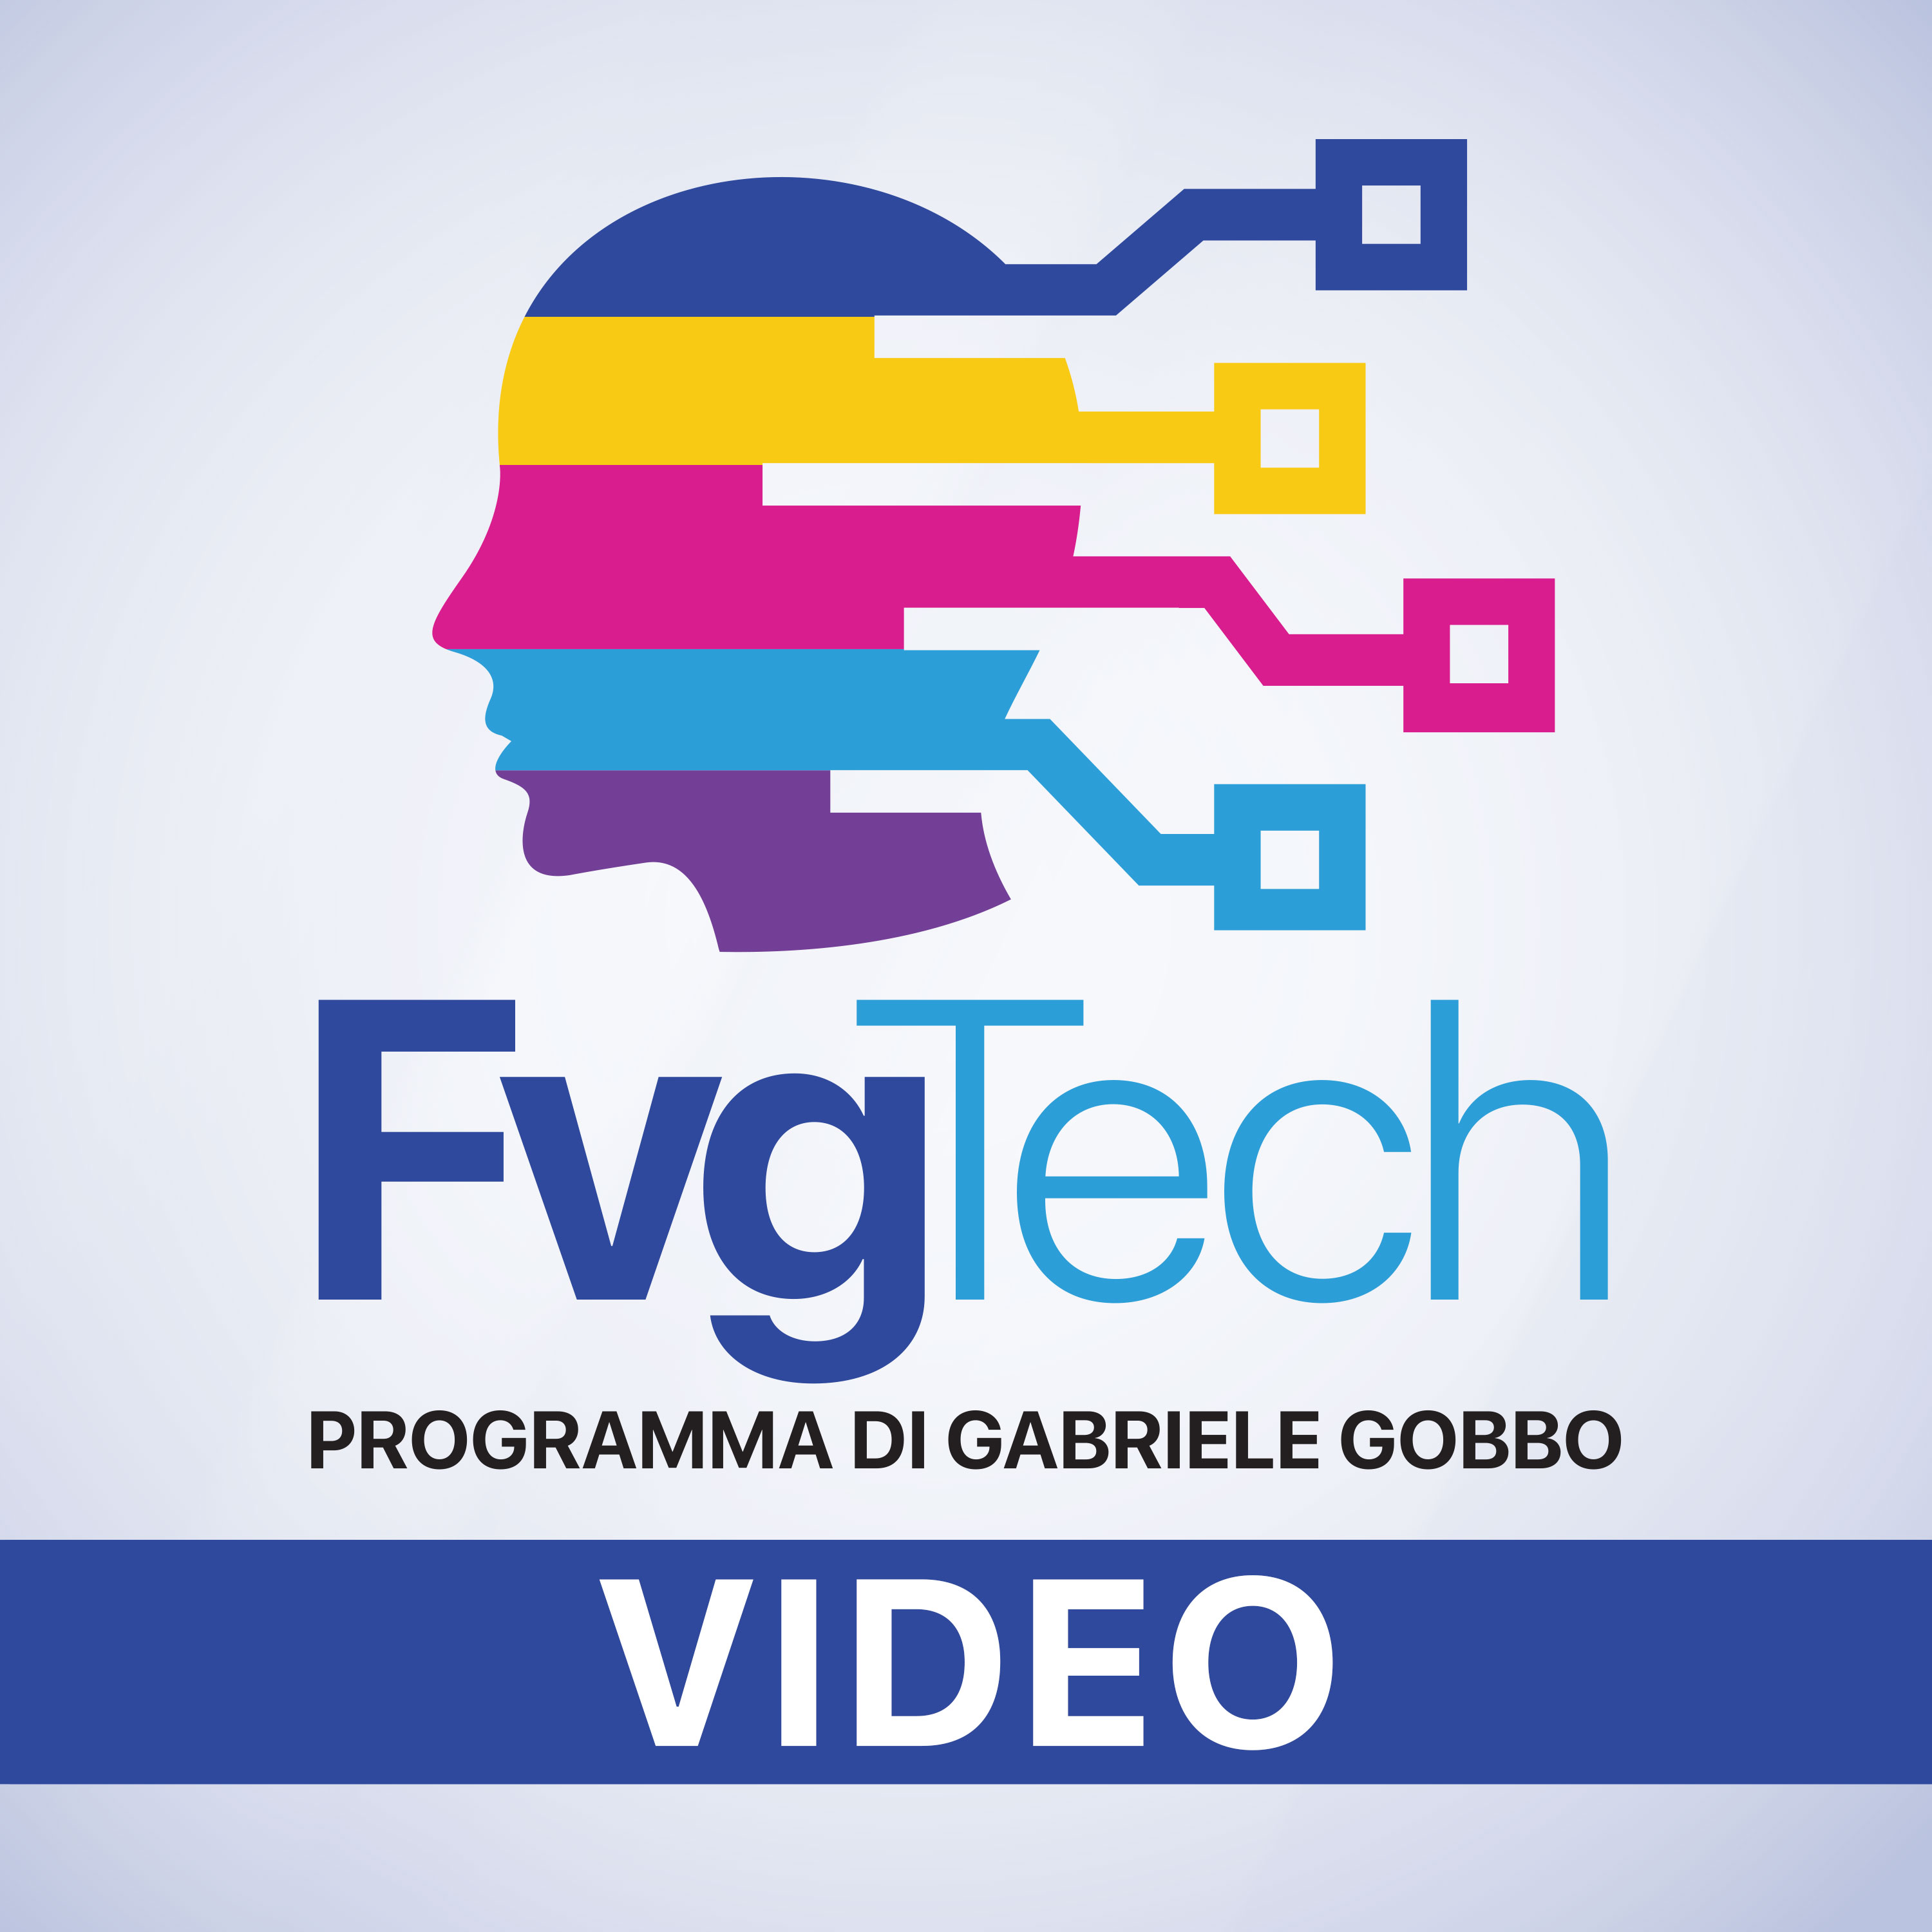 FvgTech Programma TV di Gabriele Gobbo (versione video)